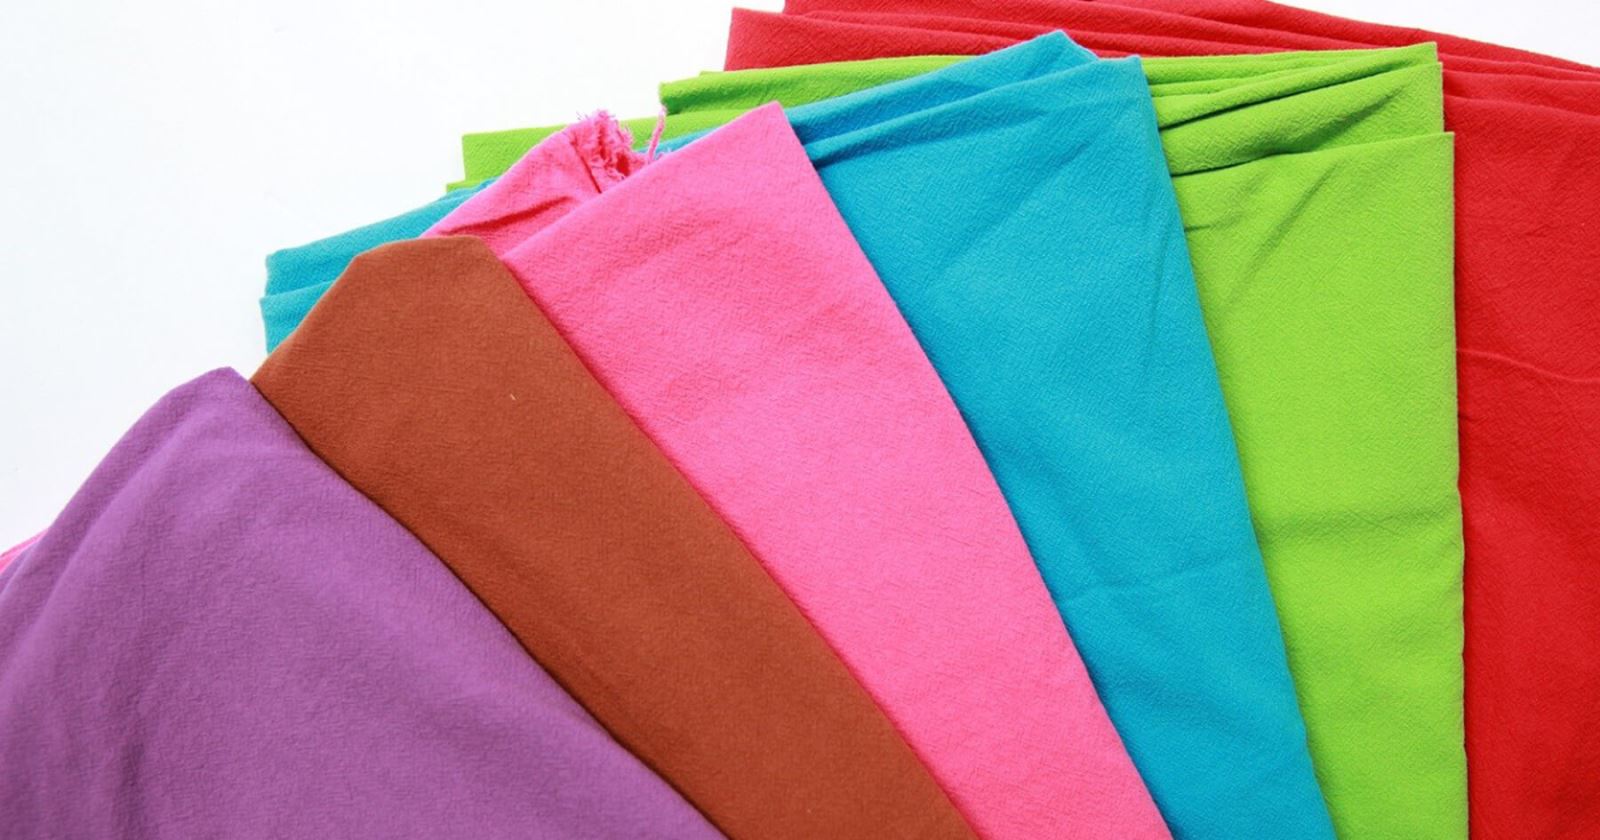 Gạo lựa chọn chất liệu vải cotton 100% để may đồng phục cho các bé mầm non